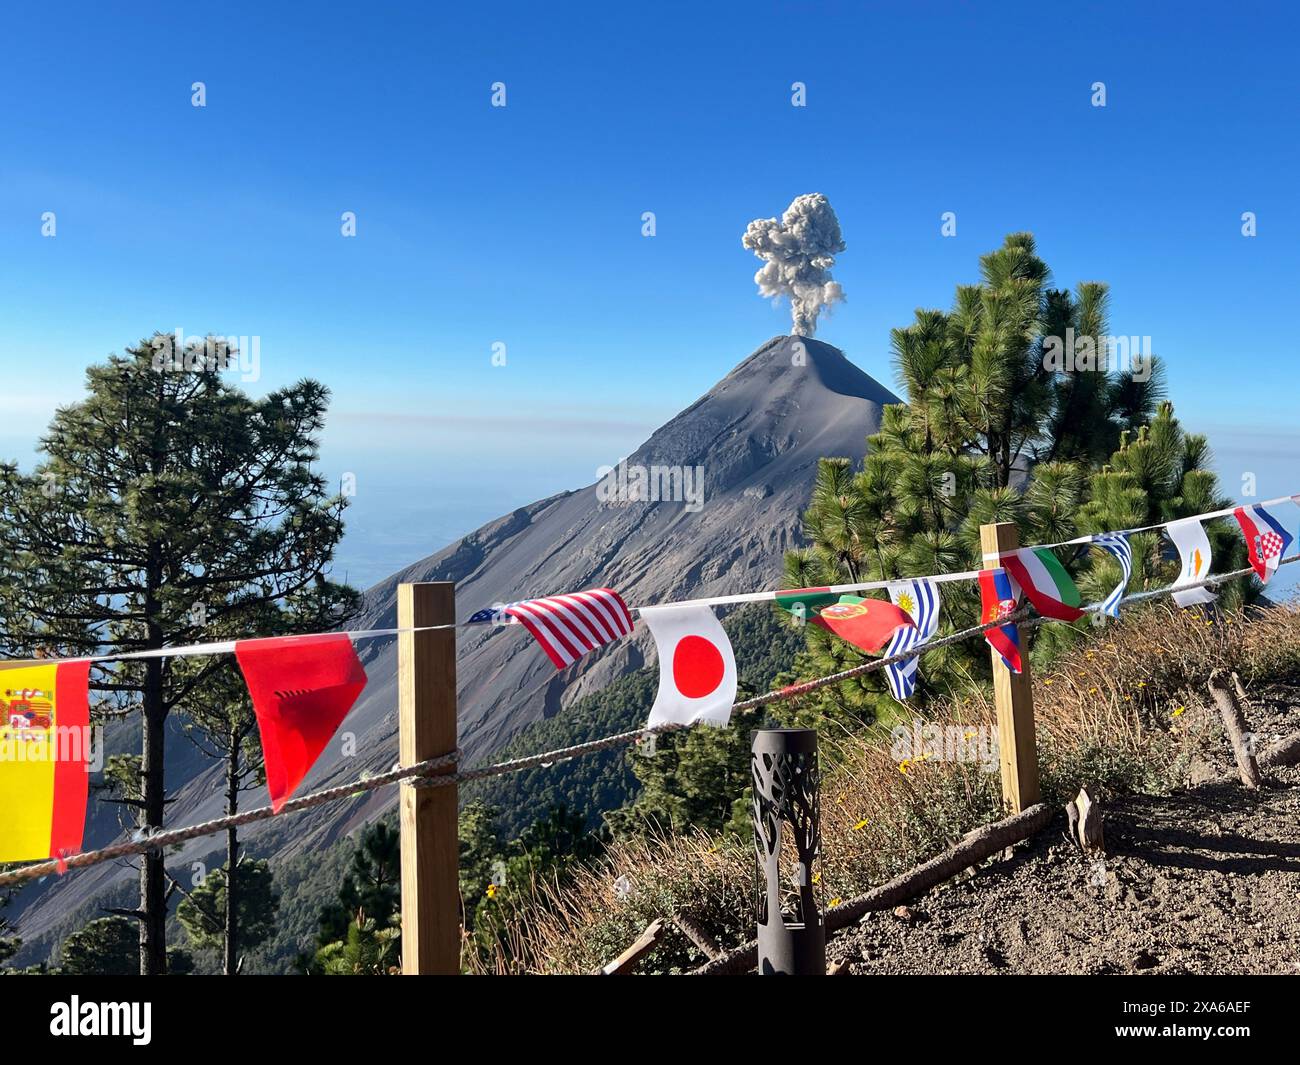 Bandiere colorate vicino alla montagna con nuvole di cenere sullo sfondo Foto Stock